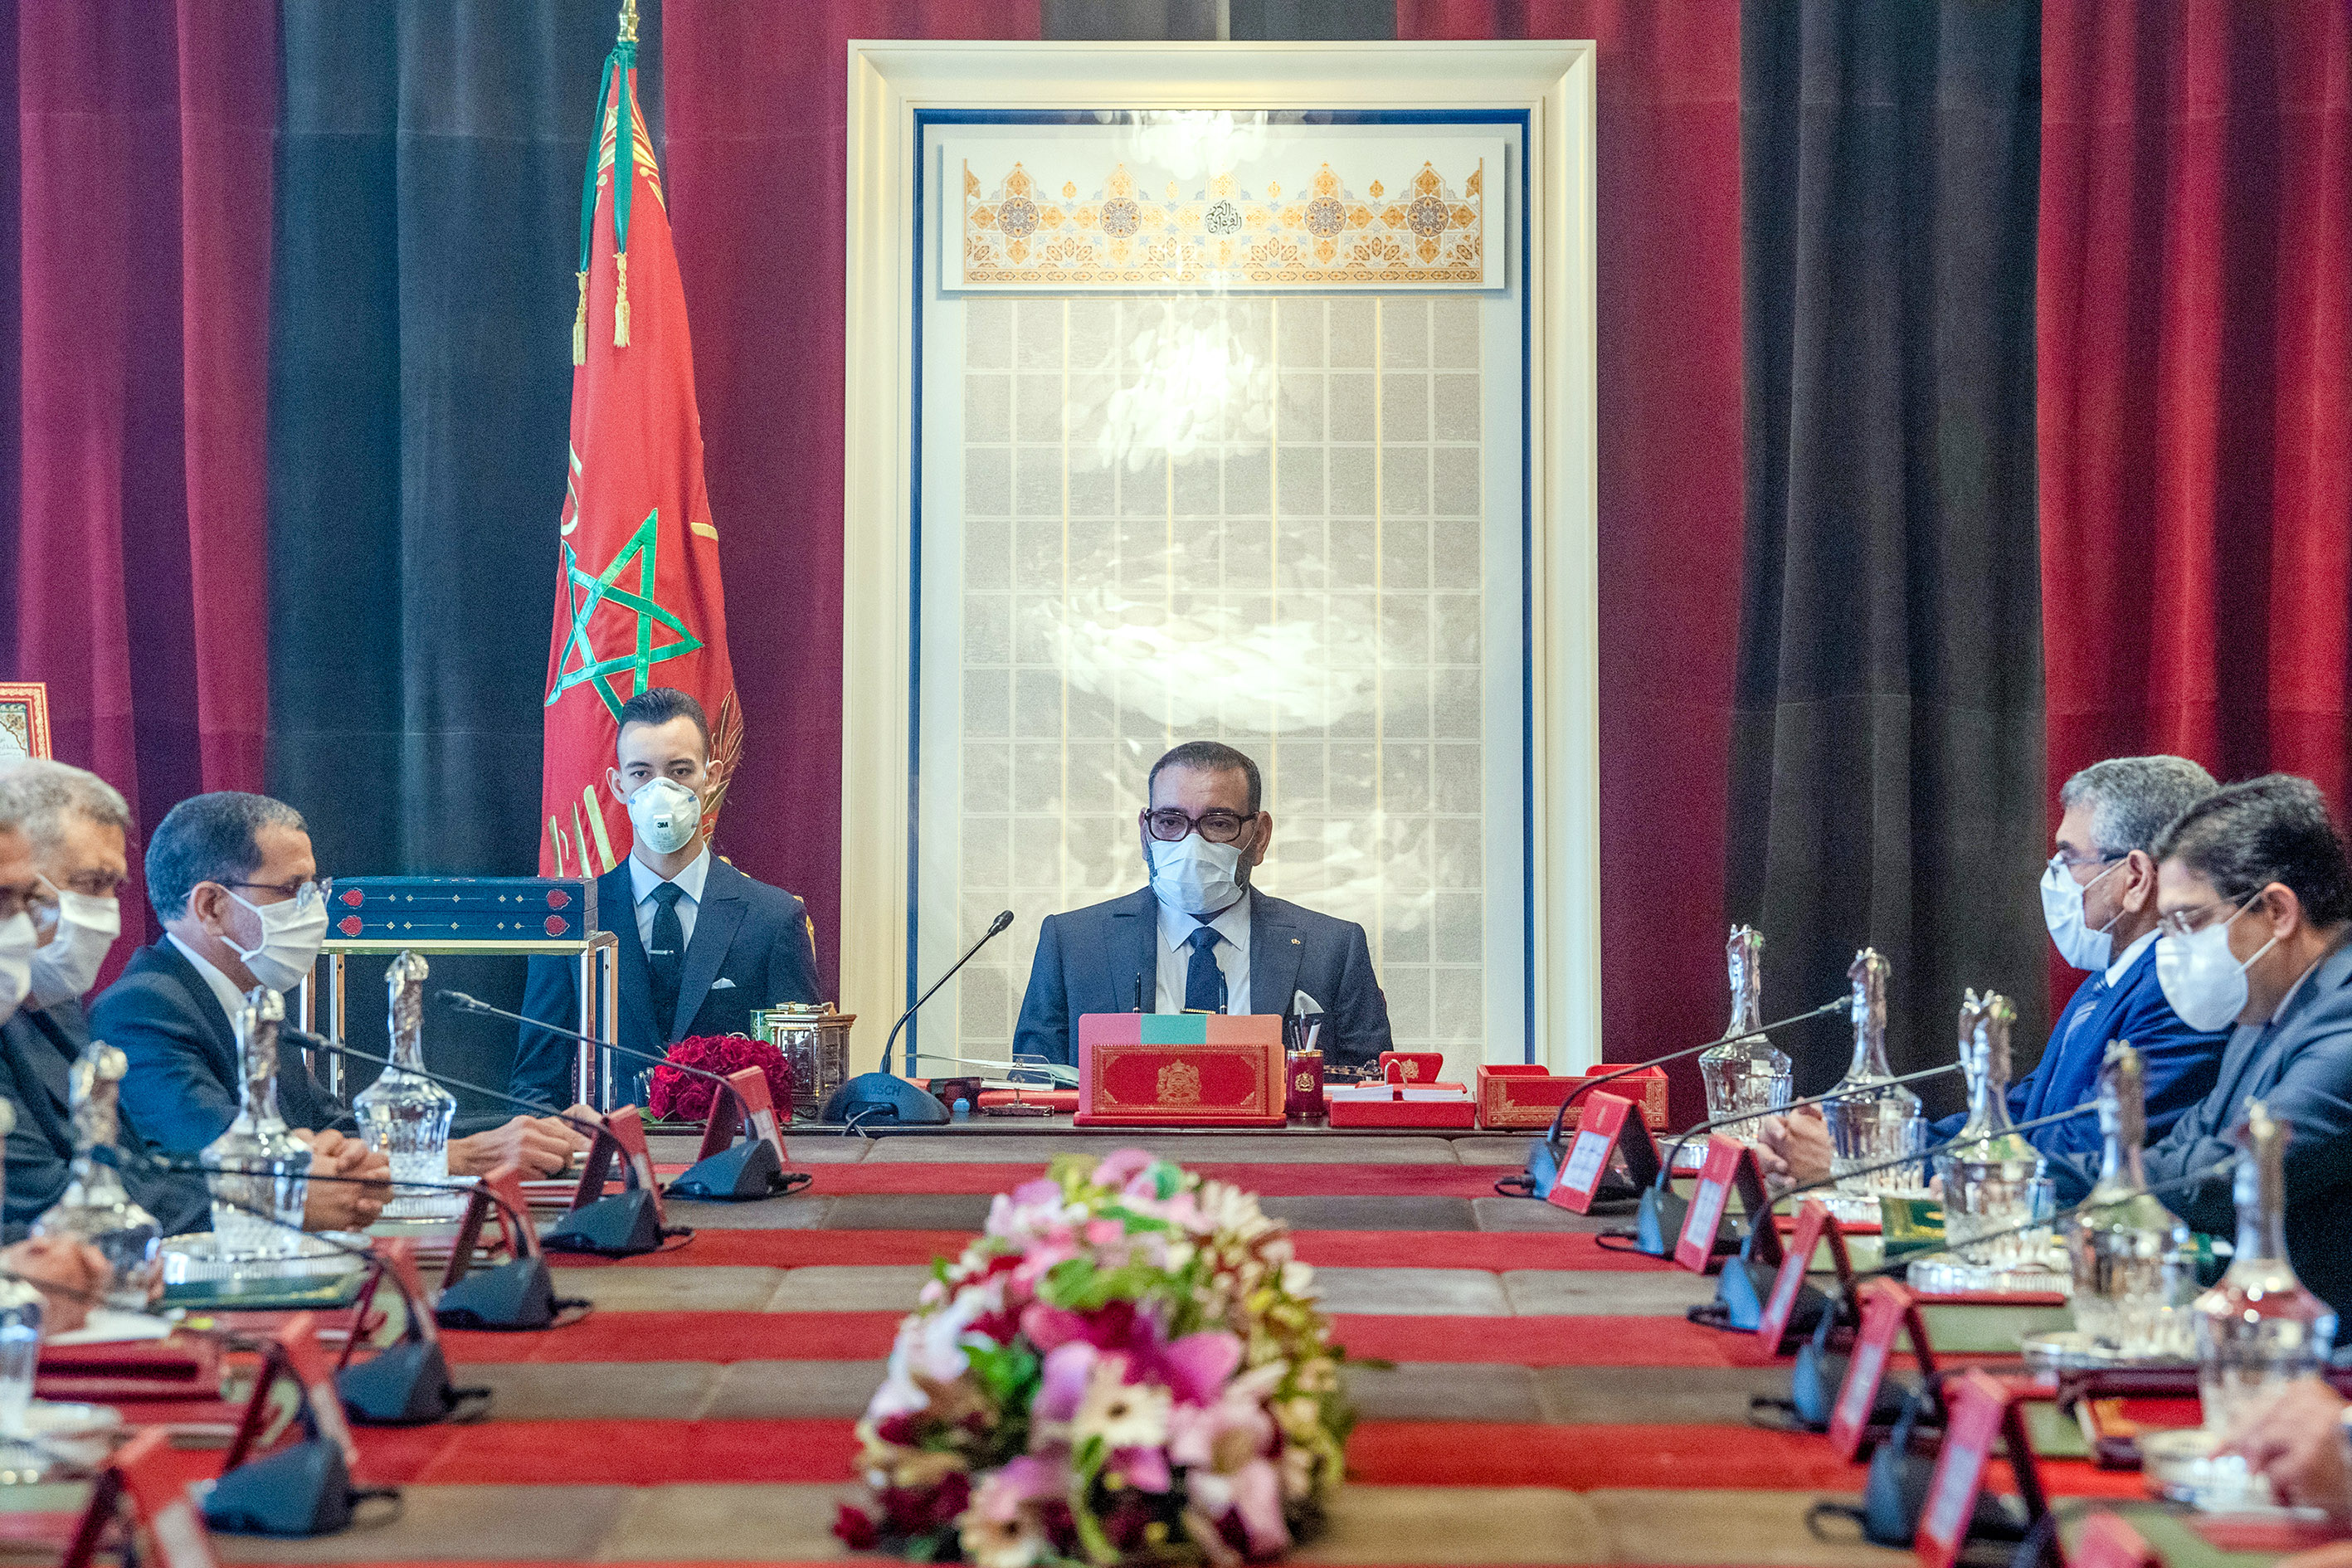 مجلس وزاري برئاسة الملك محمد السادس يقر الموازنة المعدلة لعام 2020